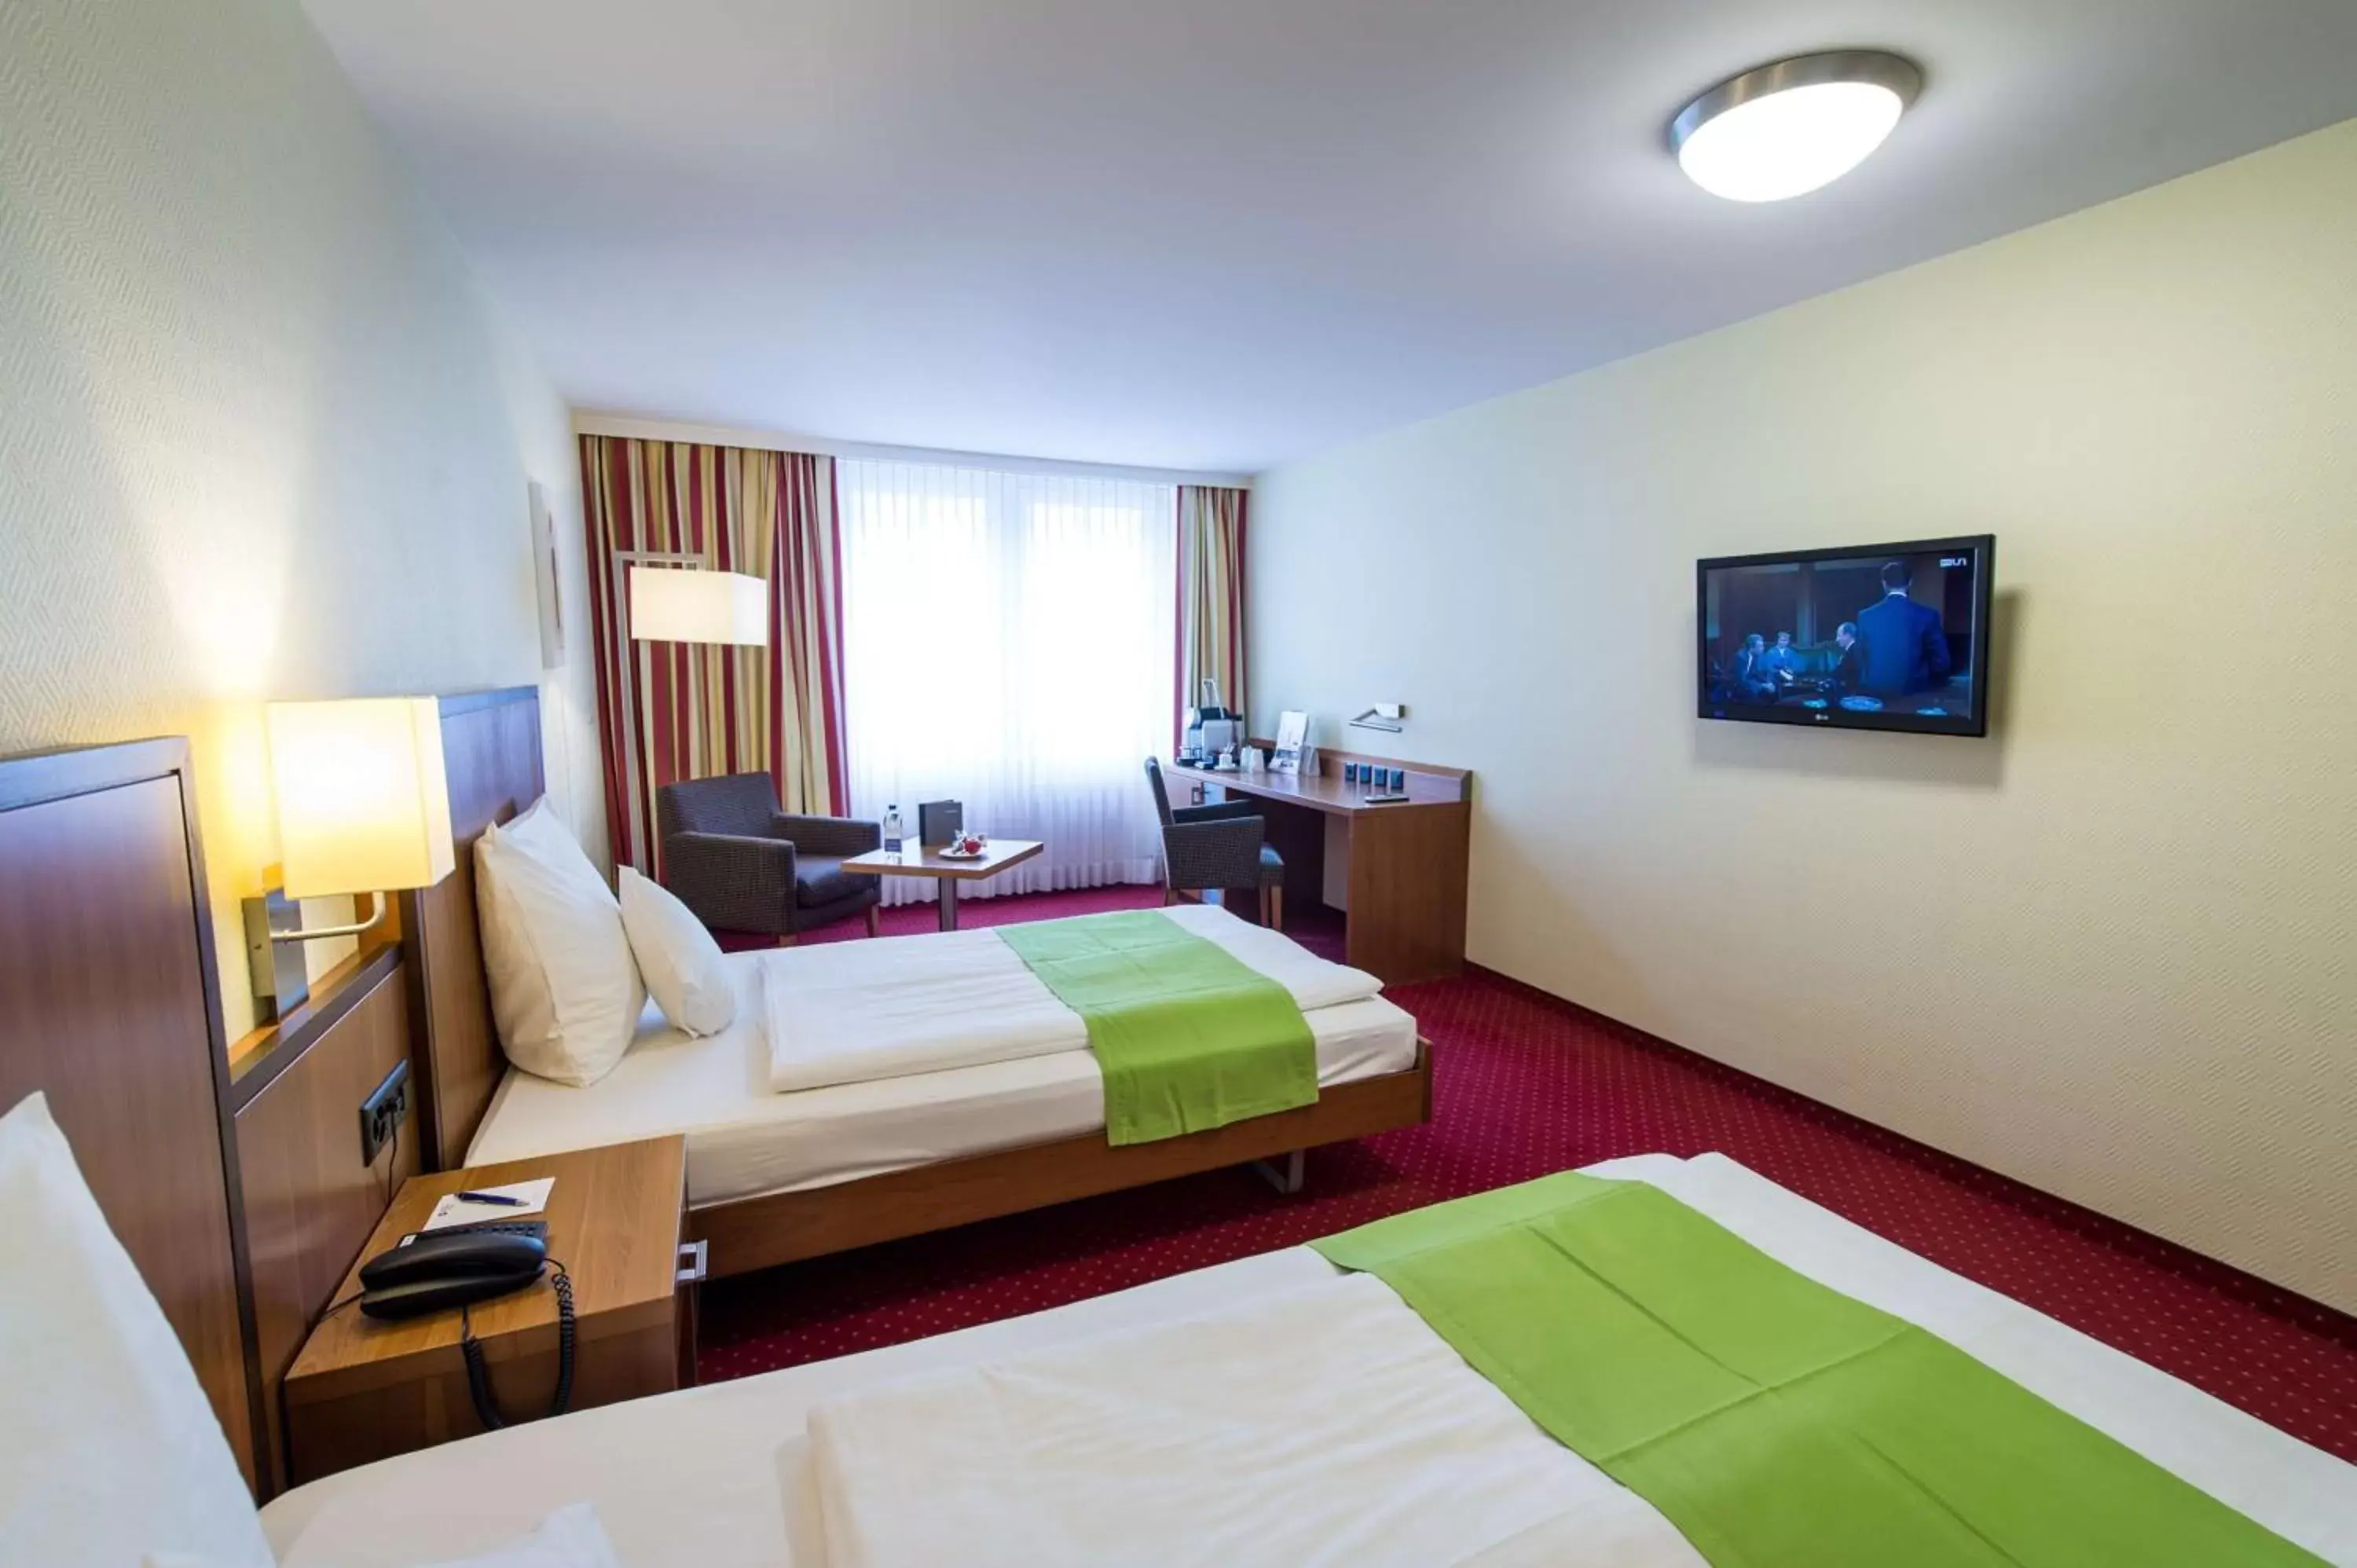 Bedroom, Bed in Best Western Plus Hotel Bahnhof